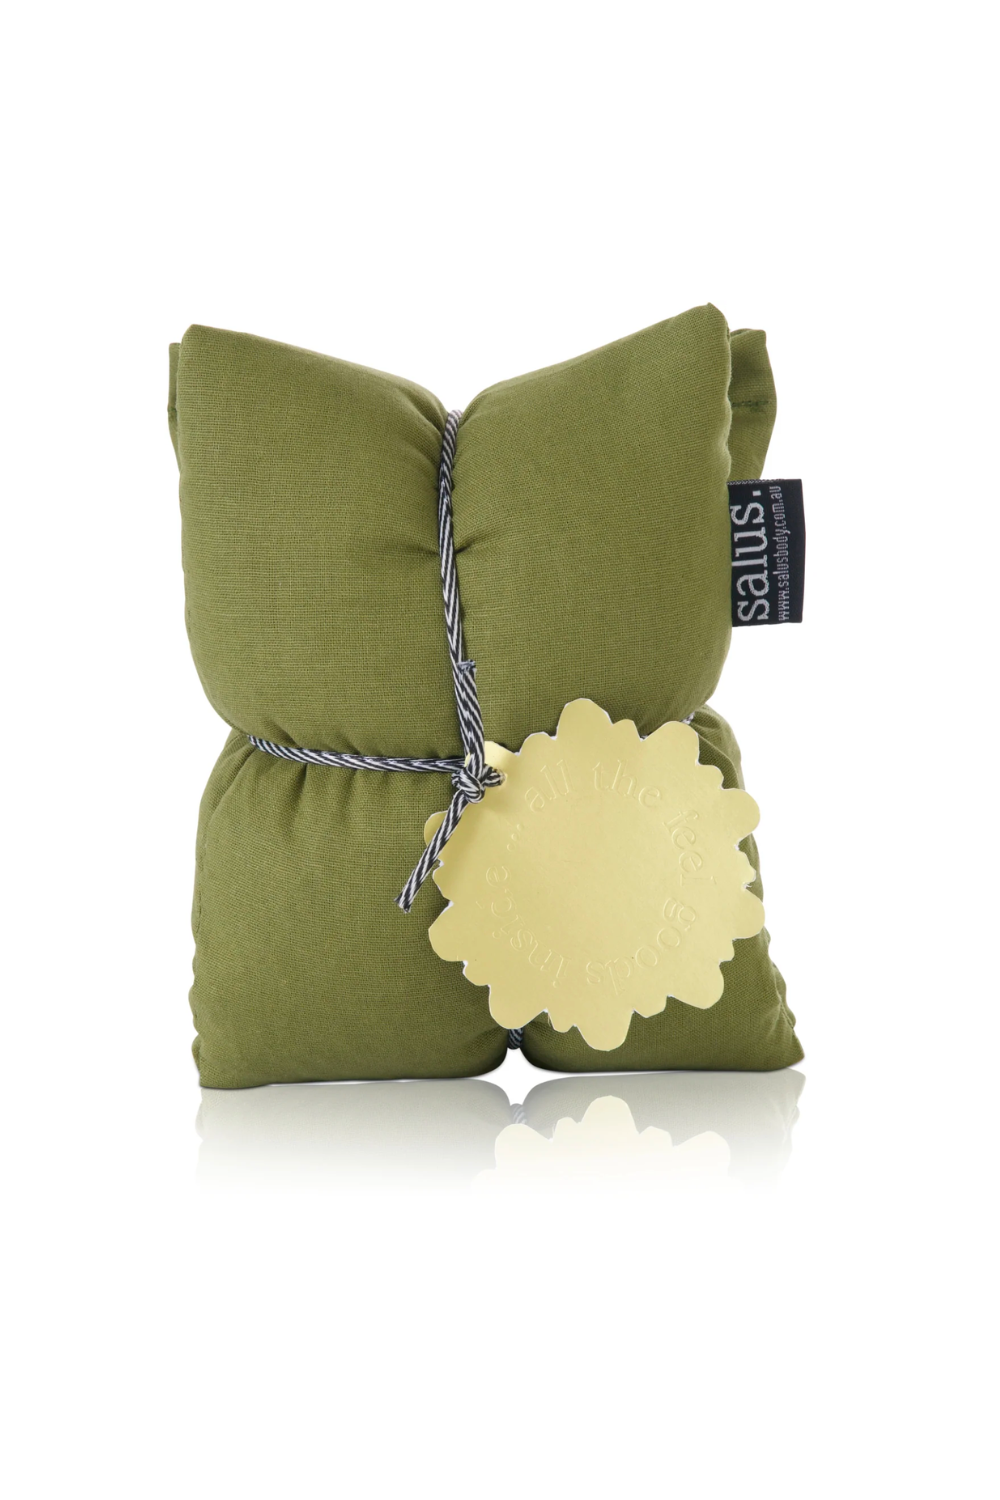 Moss Green Lavender & Jasmine Heat Pillow